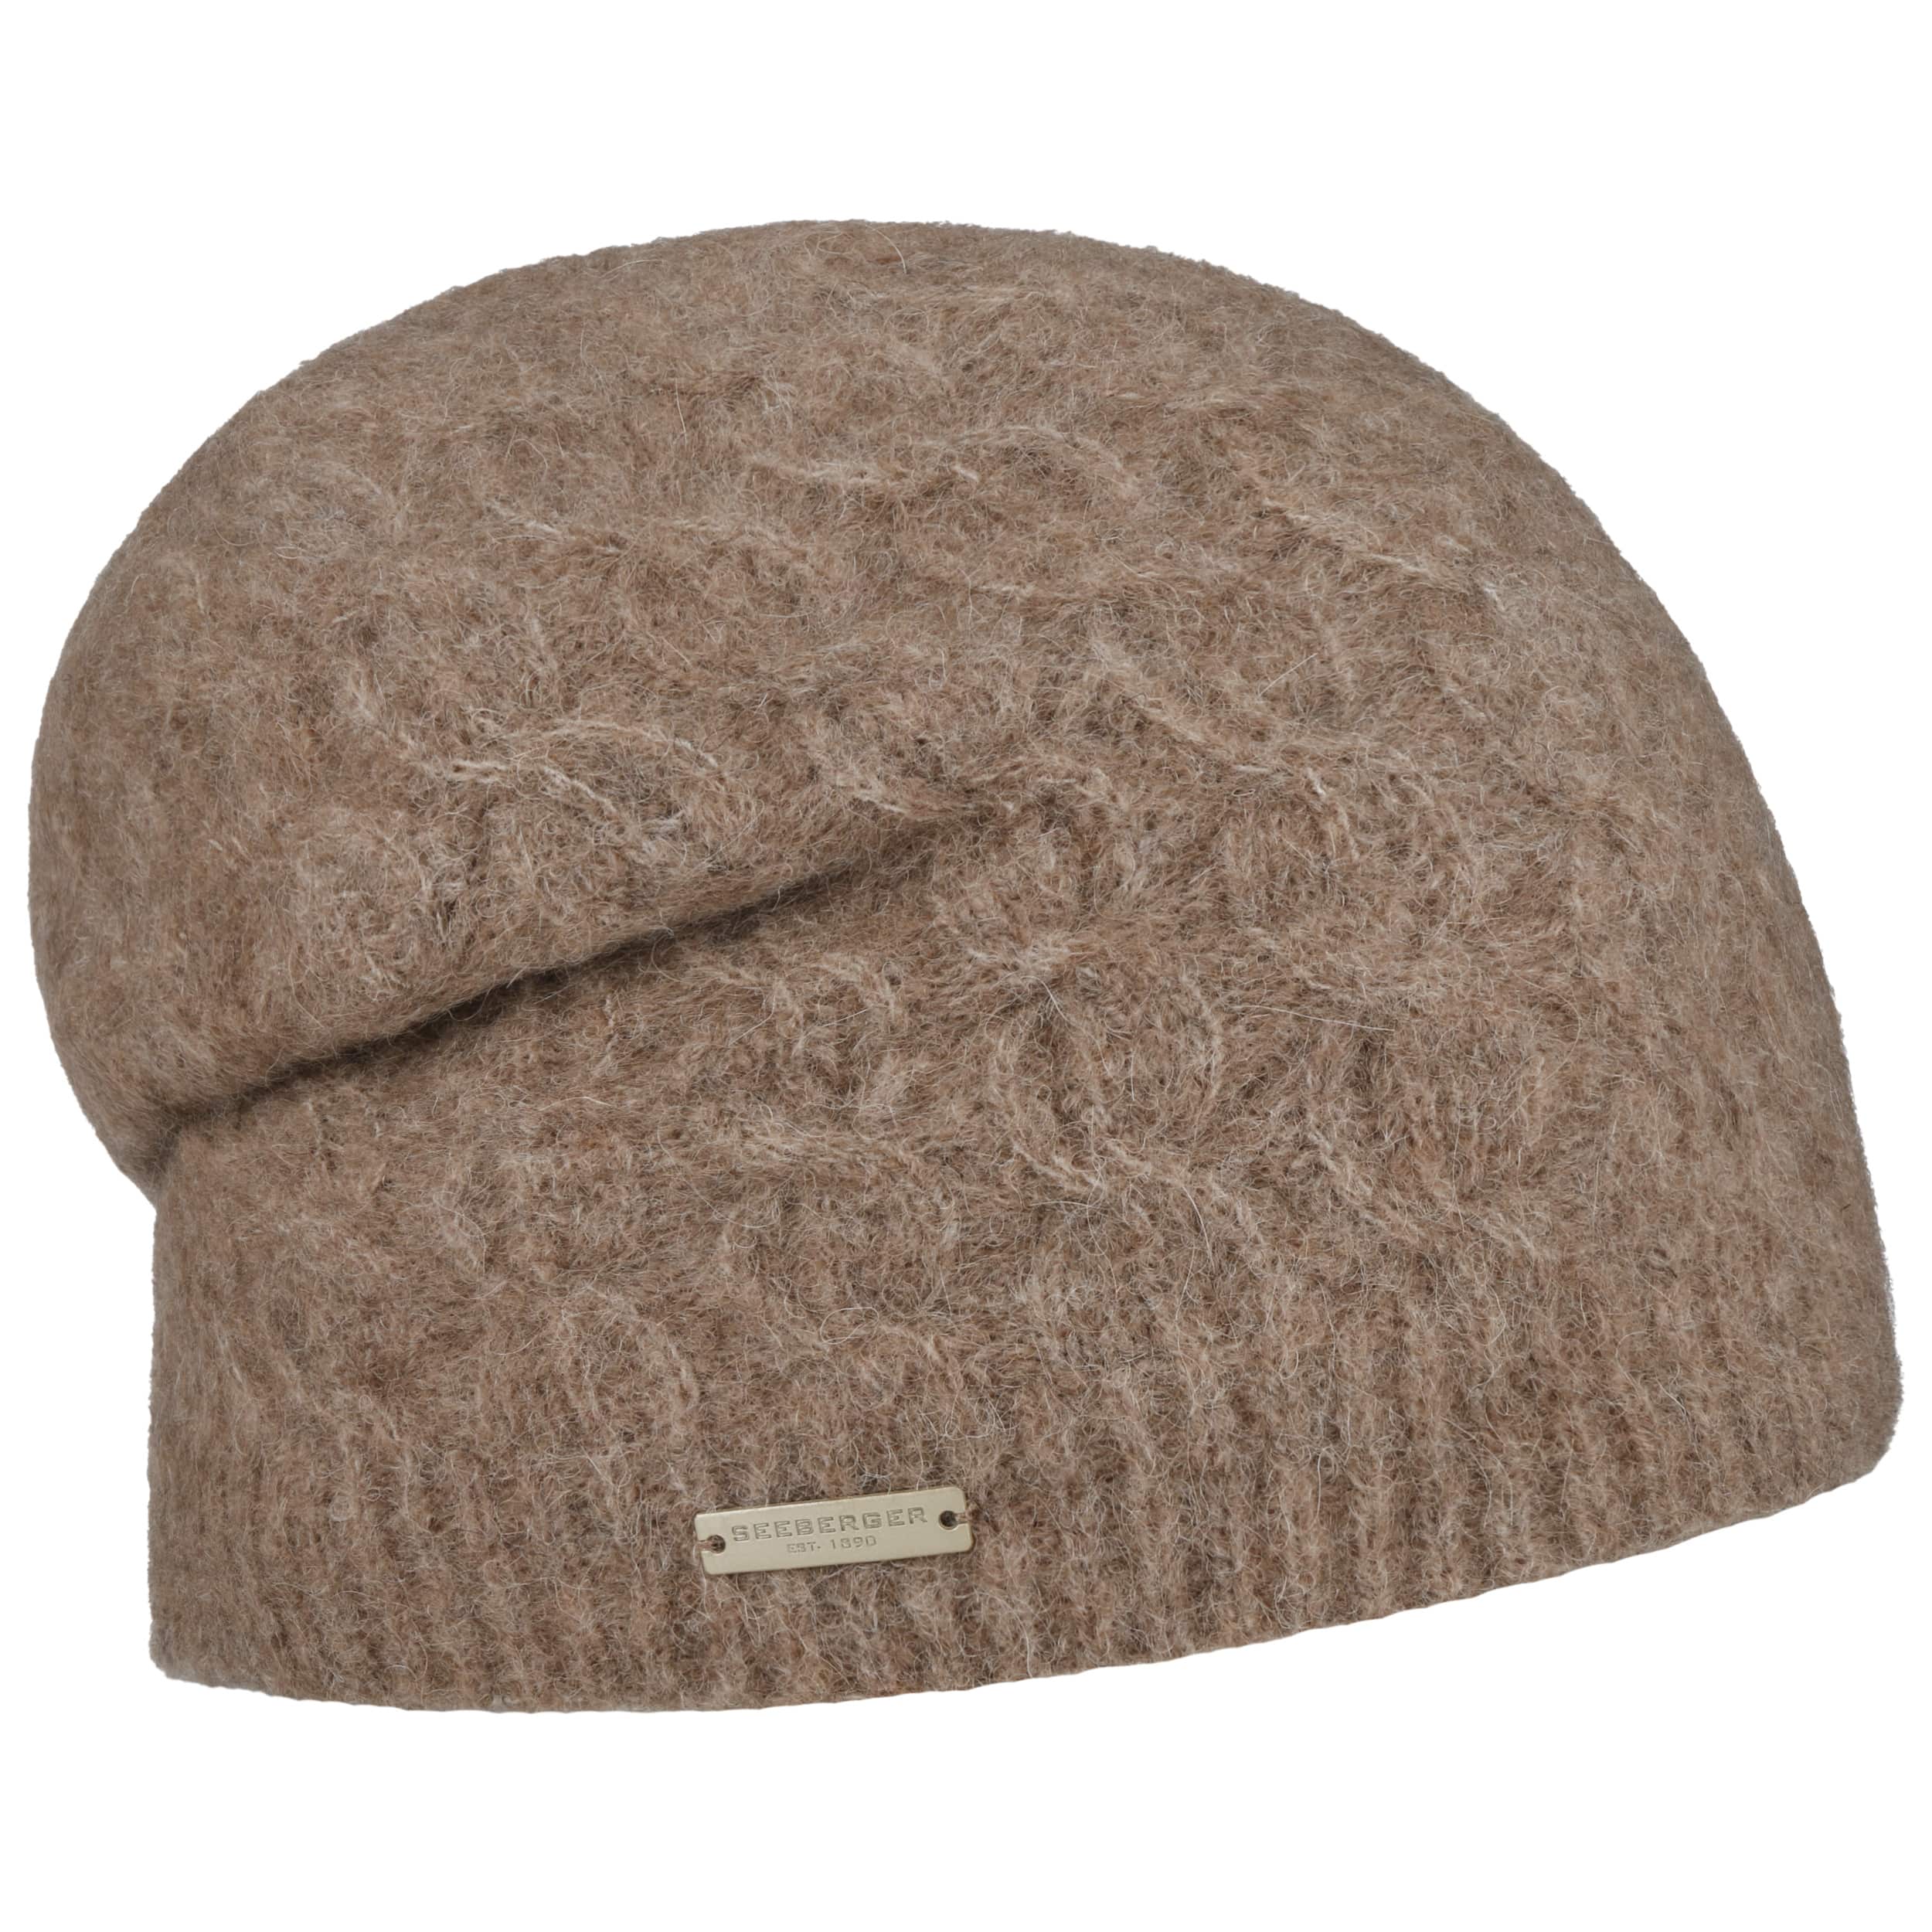 Majalisa Alpaca Headsock Beanie Hat by Seeberger - 62,95 €